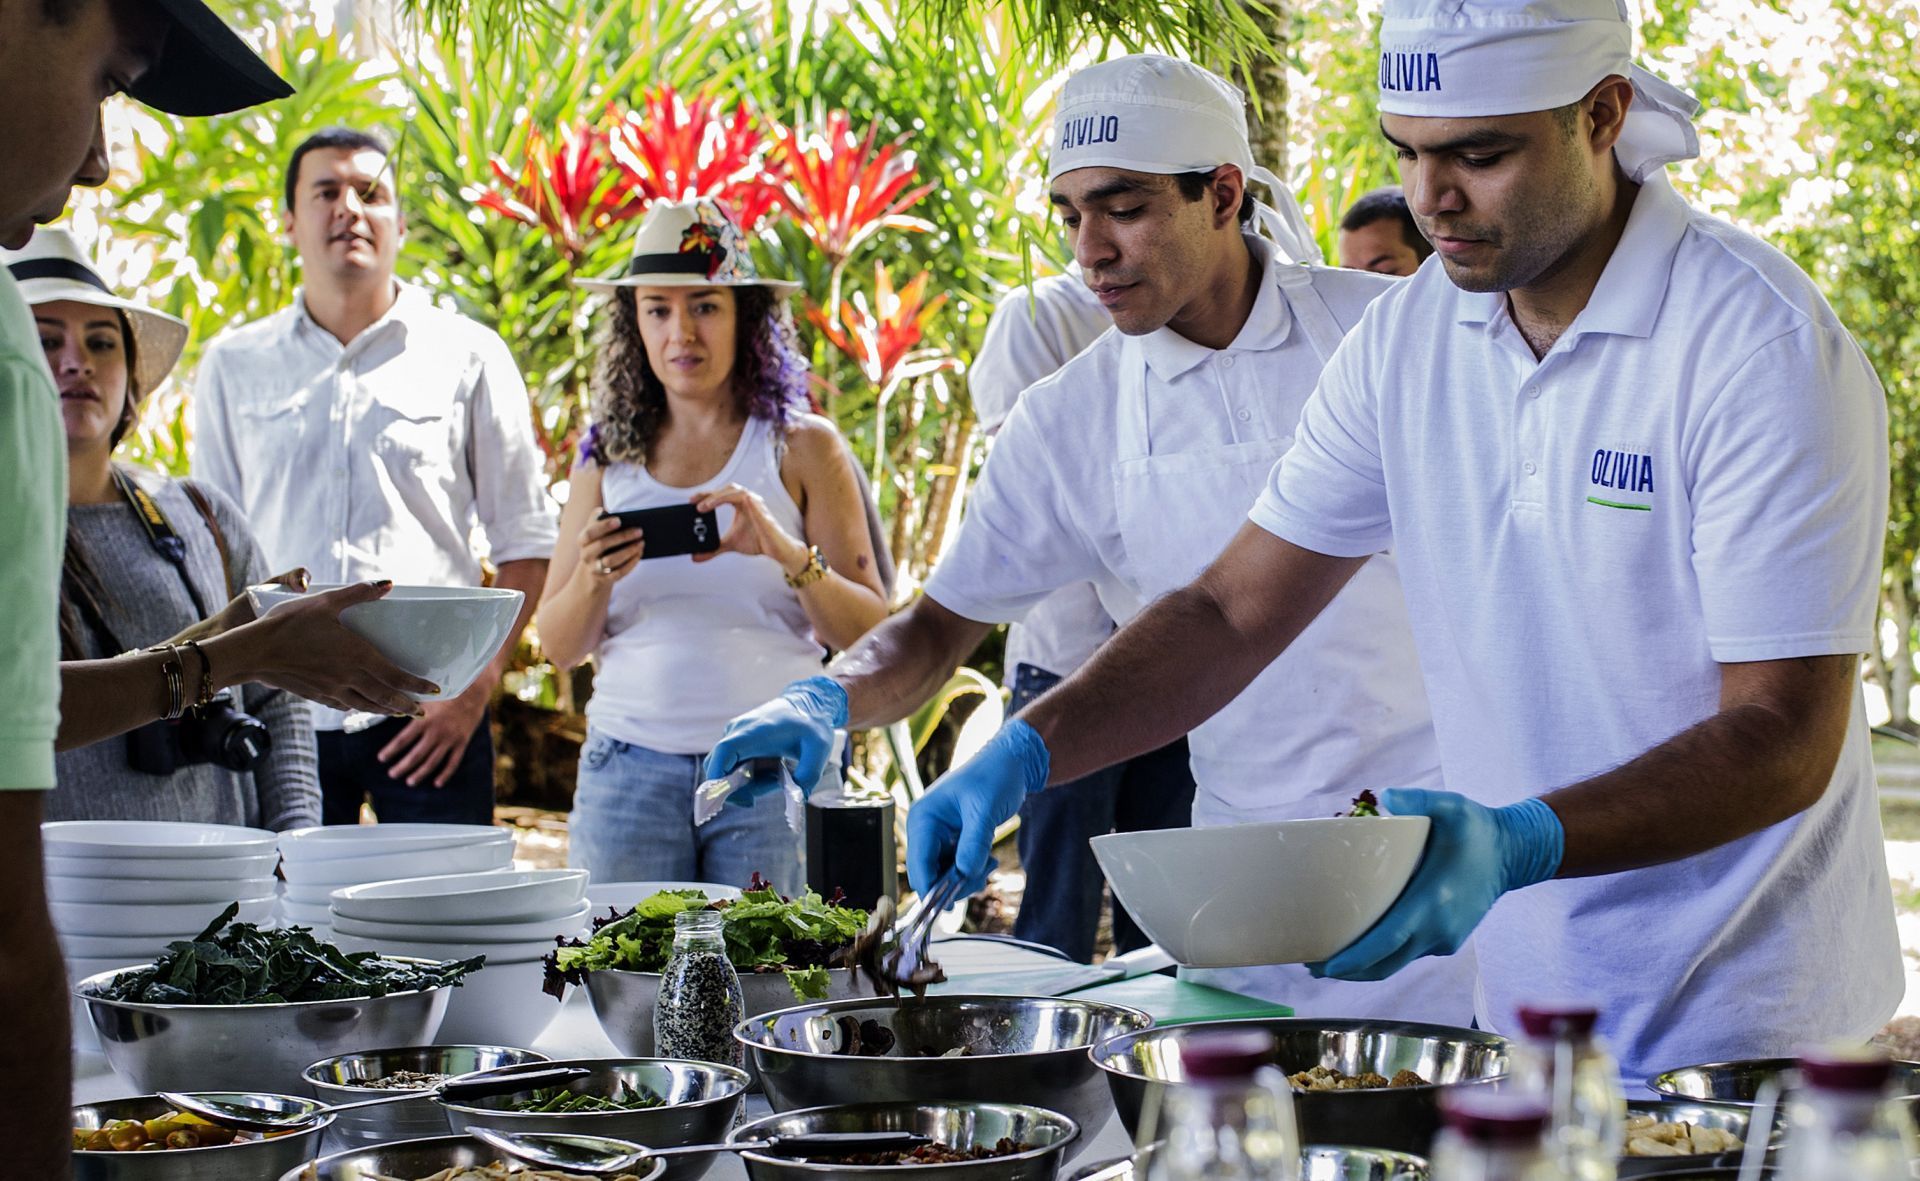 Emprendedores colombianos revolucionan la cocina con gastronomía consciente